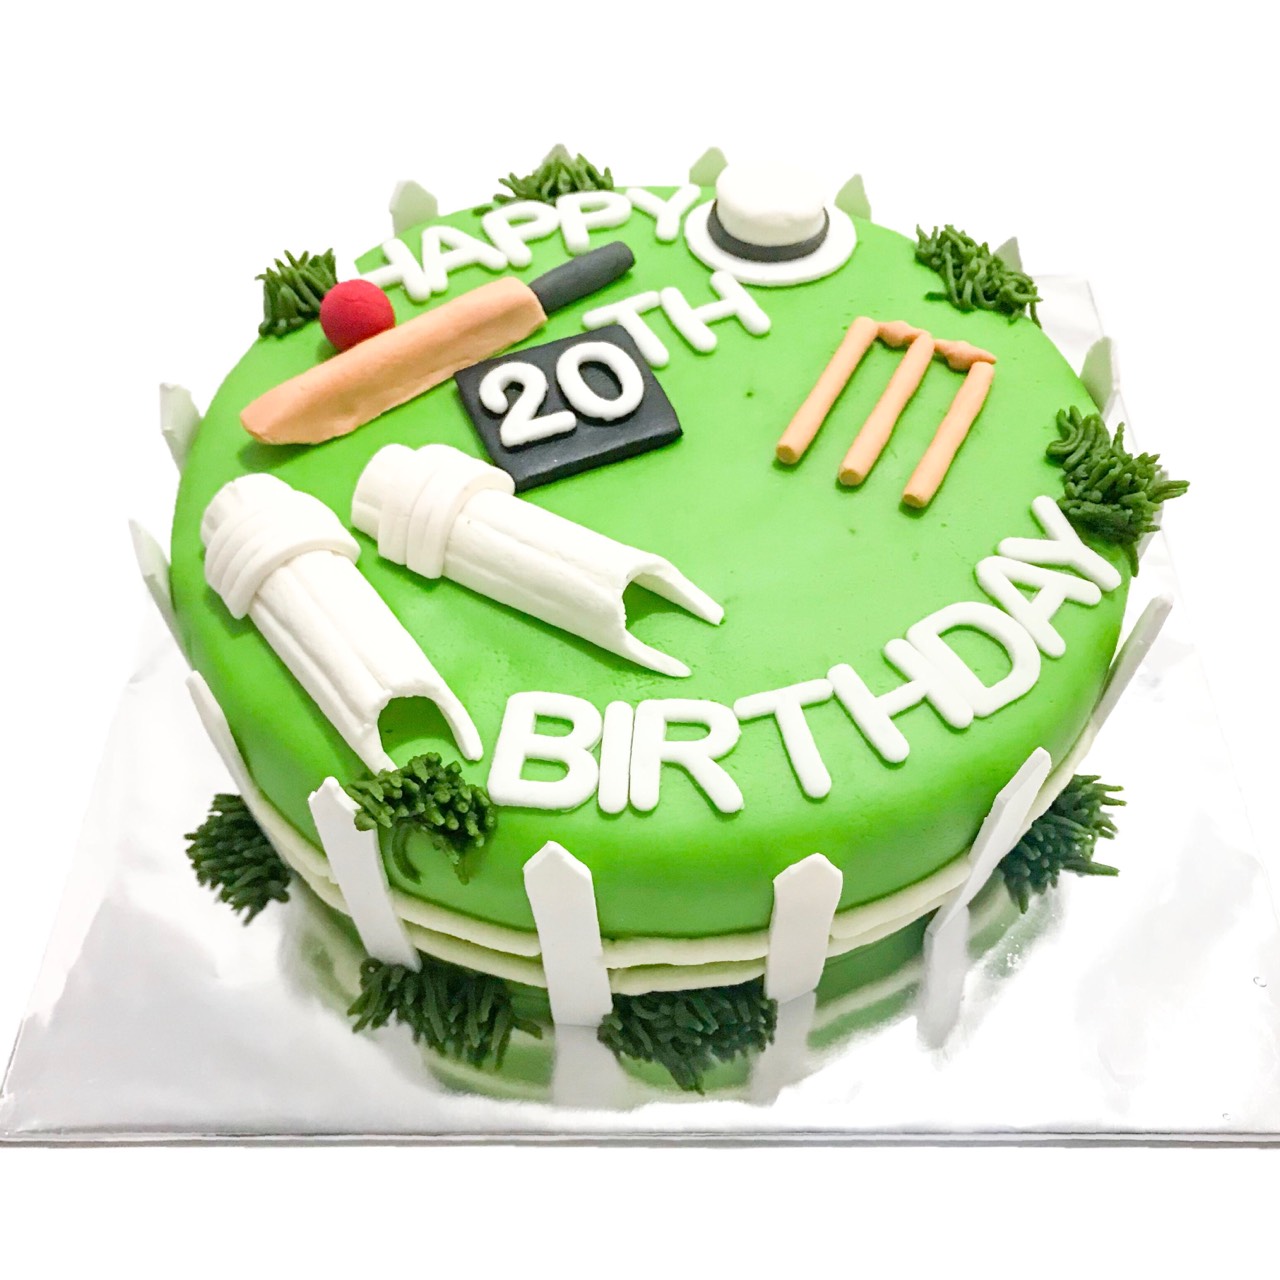 Cricket Lover Cake - 1.5Kg